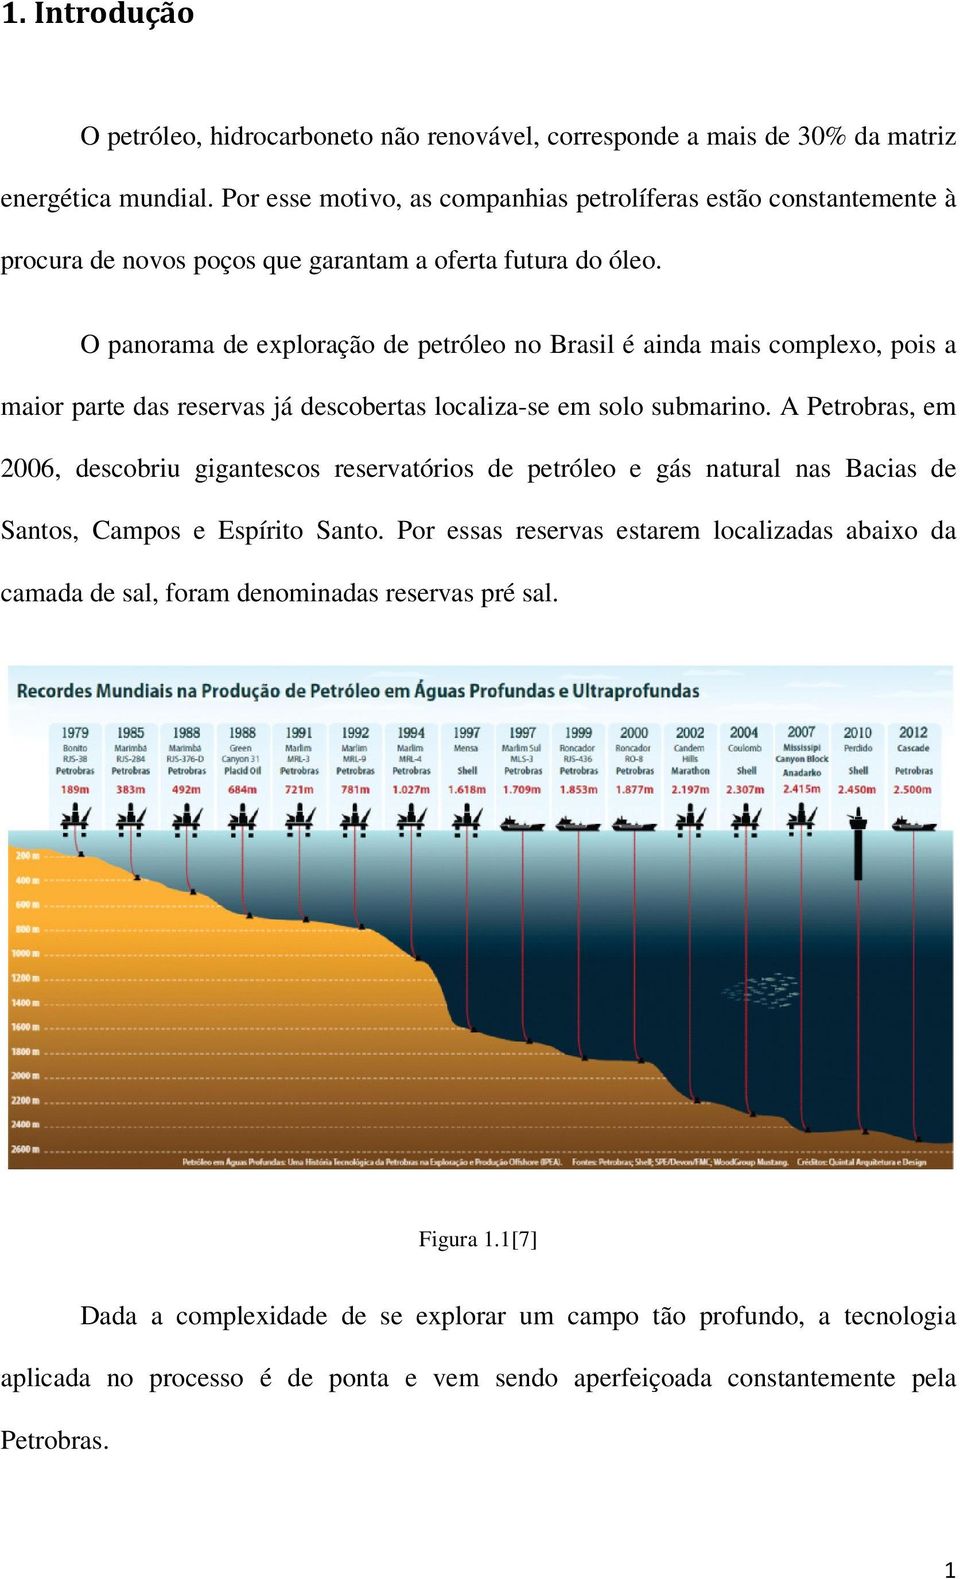 O panorama de exploração de petróleo no Brasil é ainda mais complexo, pois a maior parte das reservas já descobertas localiza-se em solo submarino.